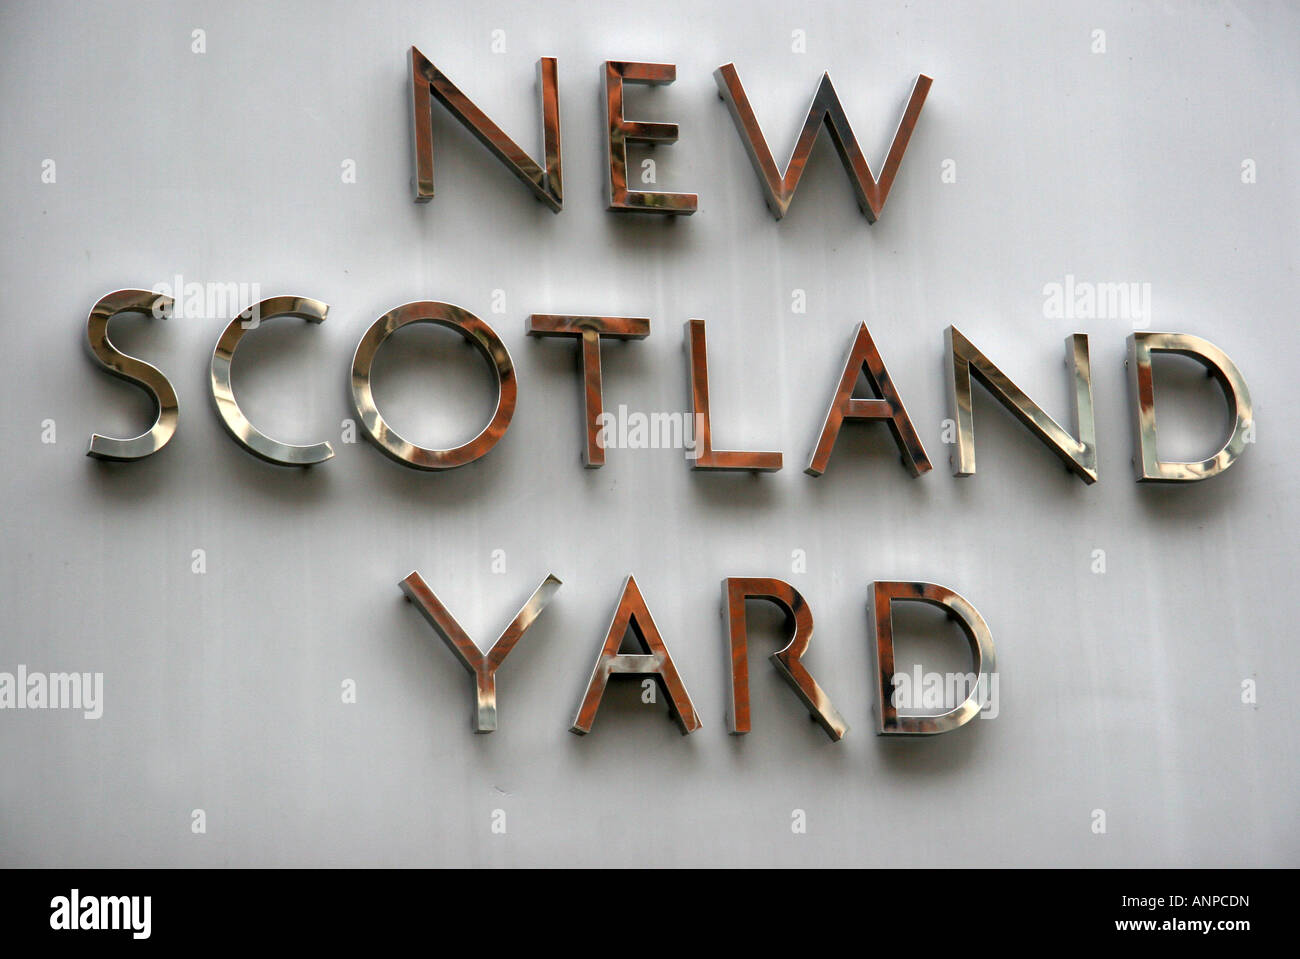 Neue Scotland Yard Zeichen der Metropolitan Police HQ in London England Stockfoto